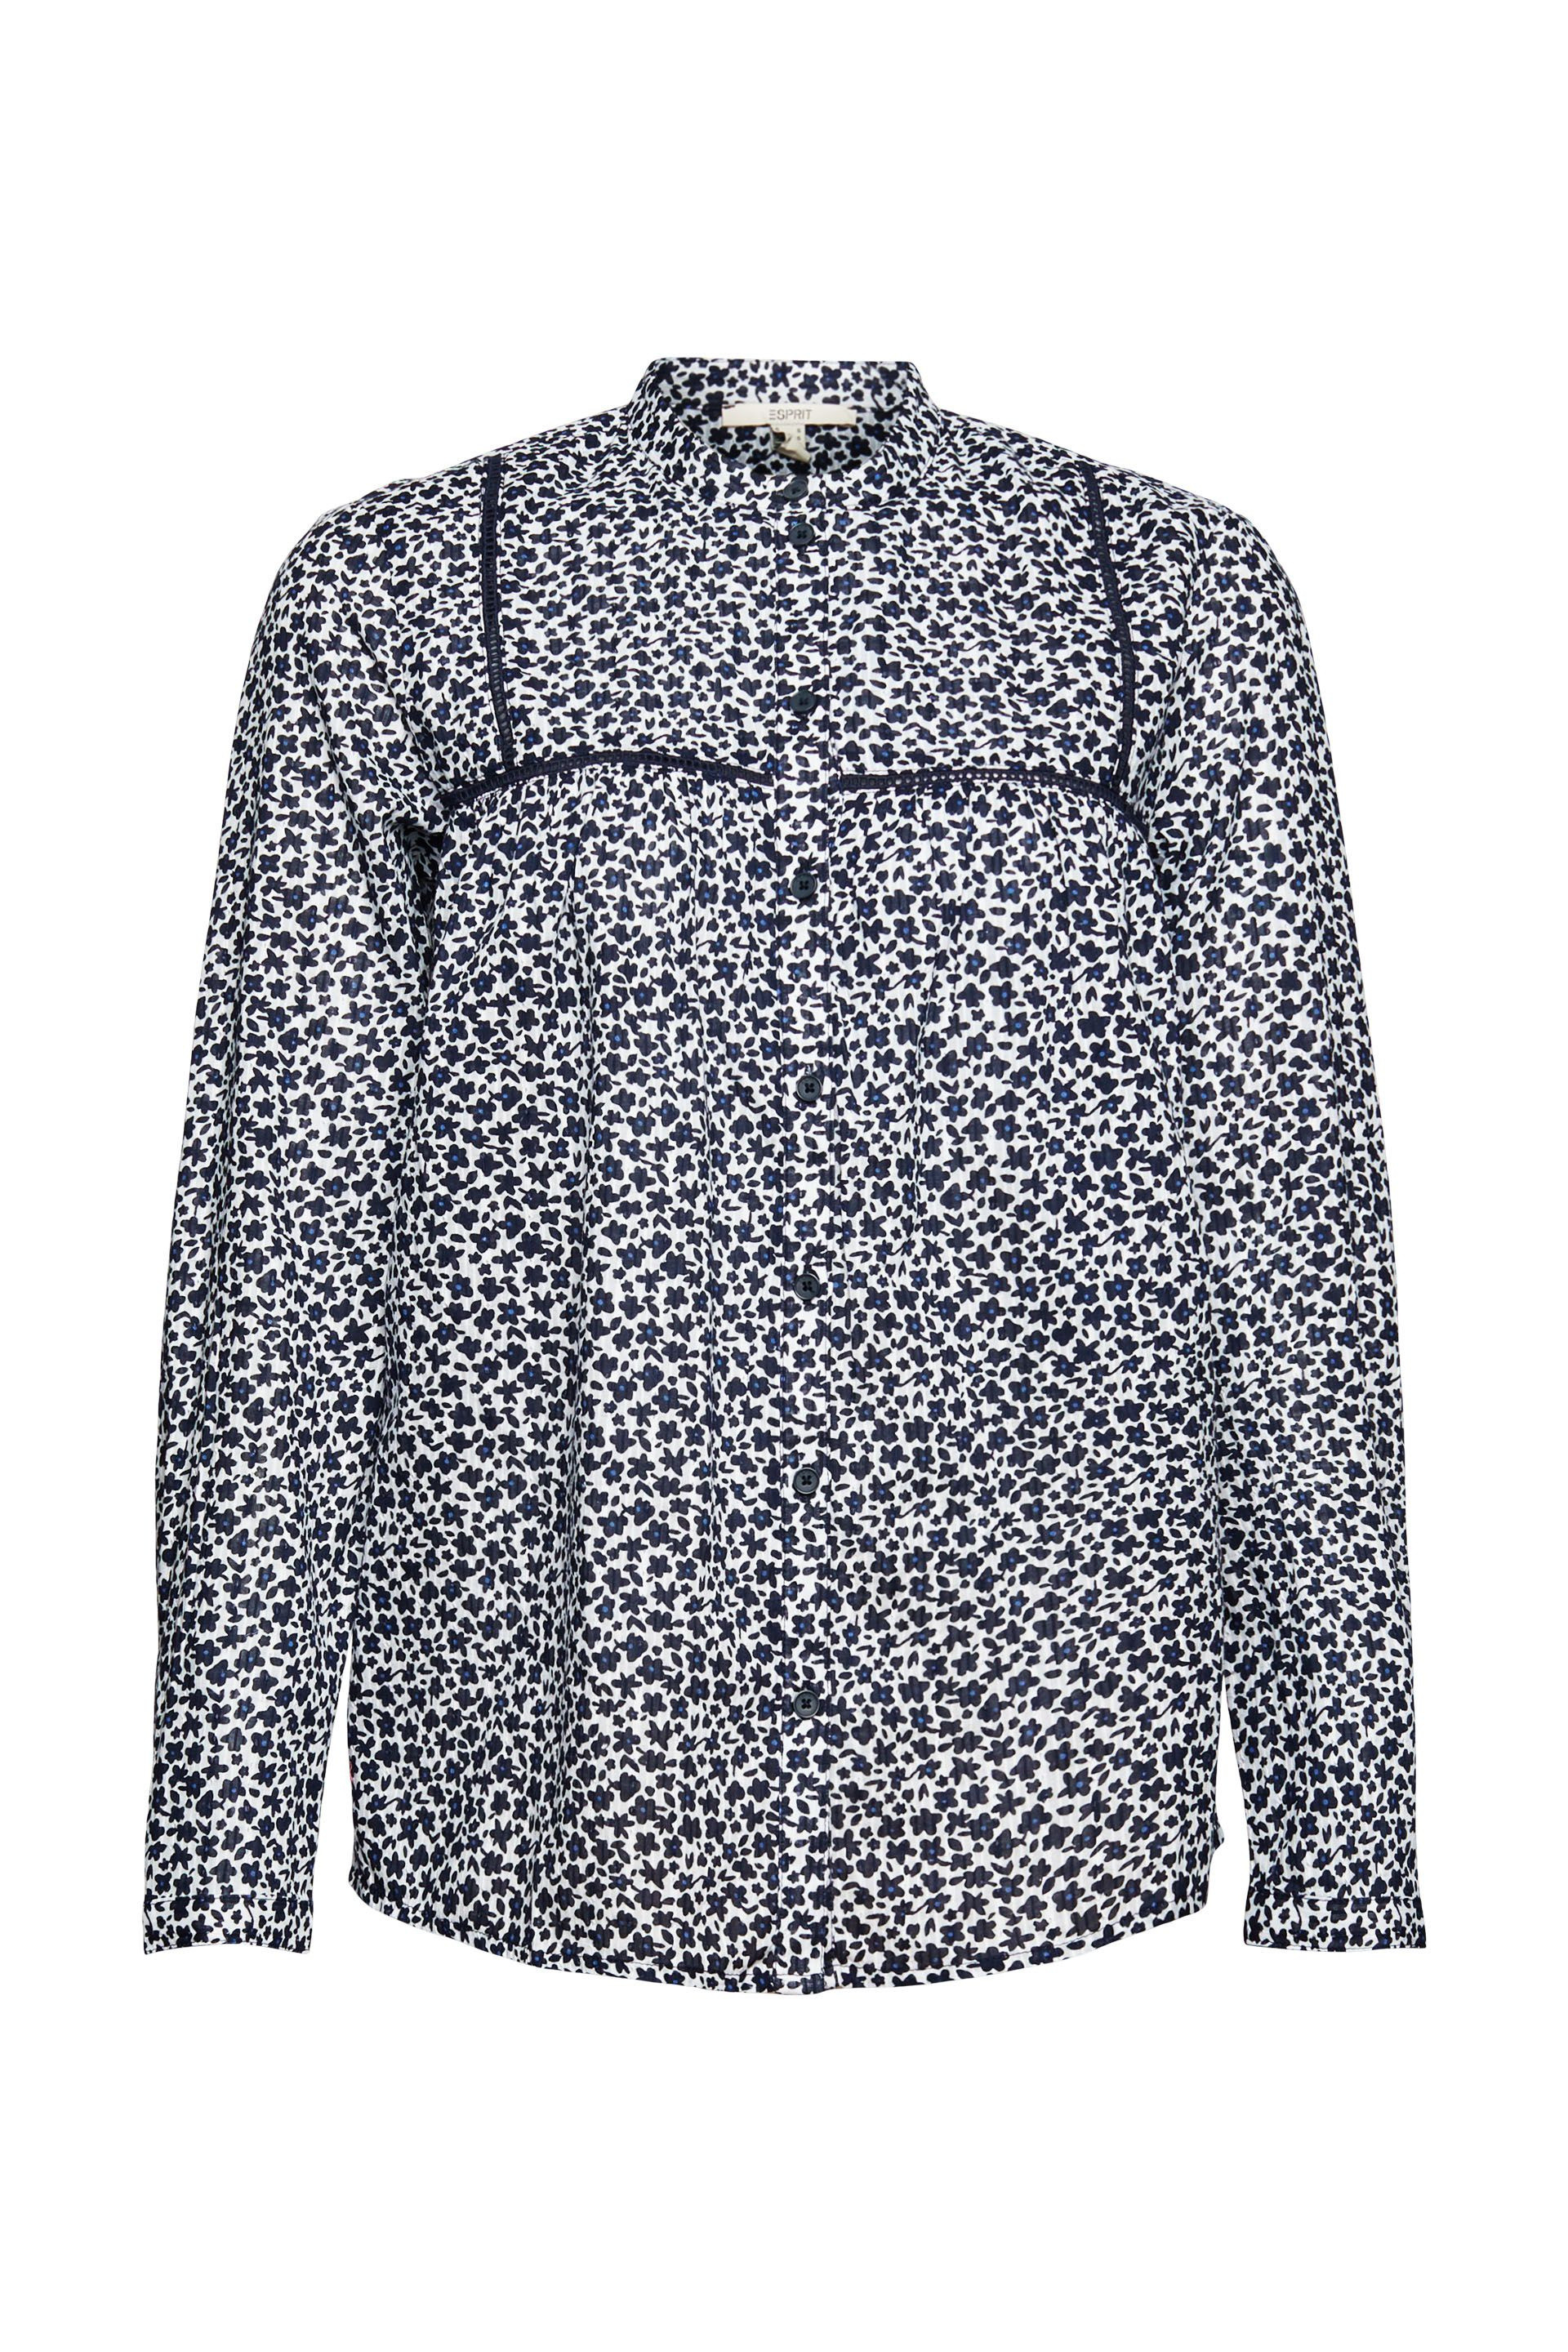 Floral patterned shirt, Dark Blue, large image number 0